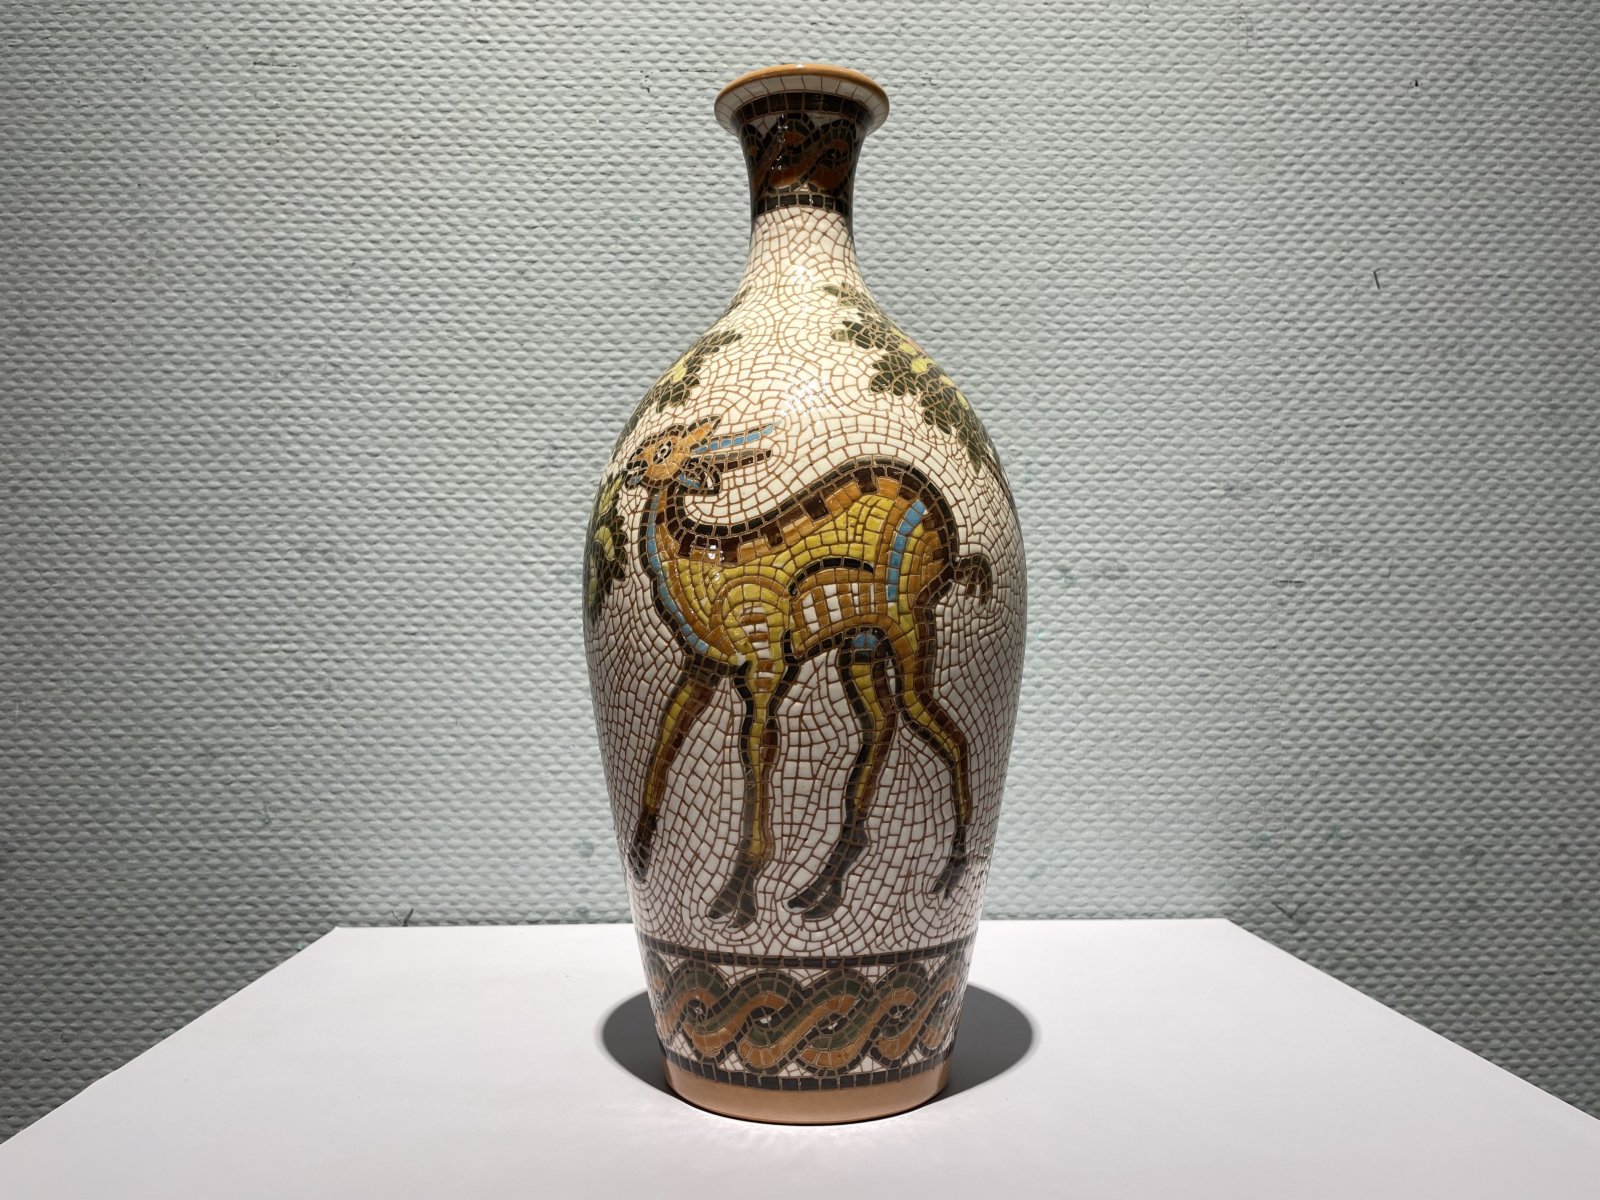 來自約旦的馬賽克鑲嵌花瓶。(記者張仕珍攝)